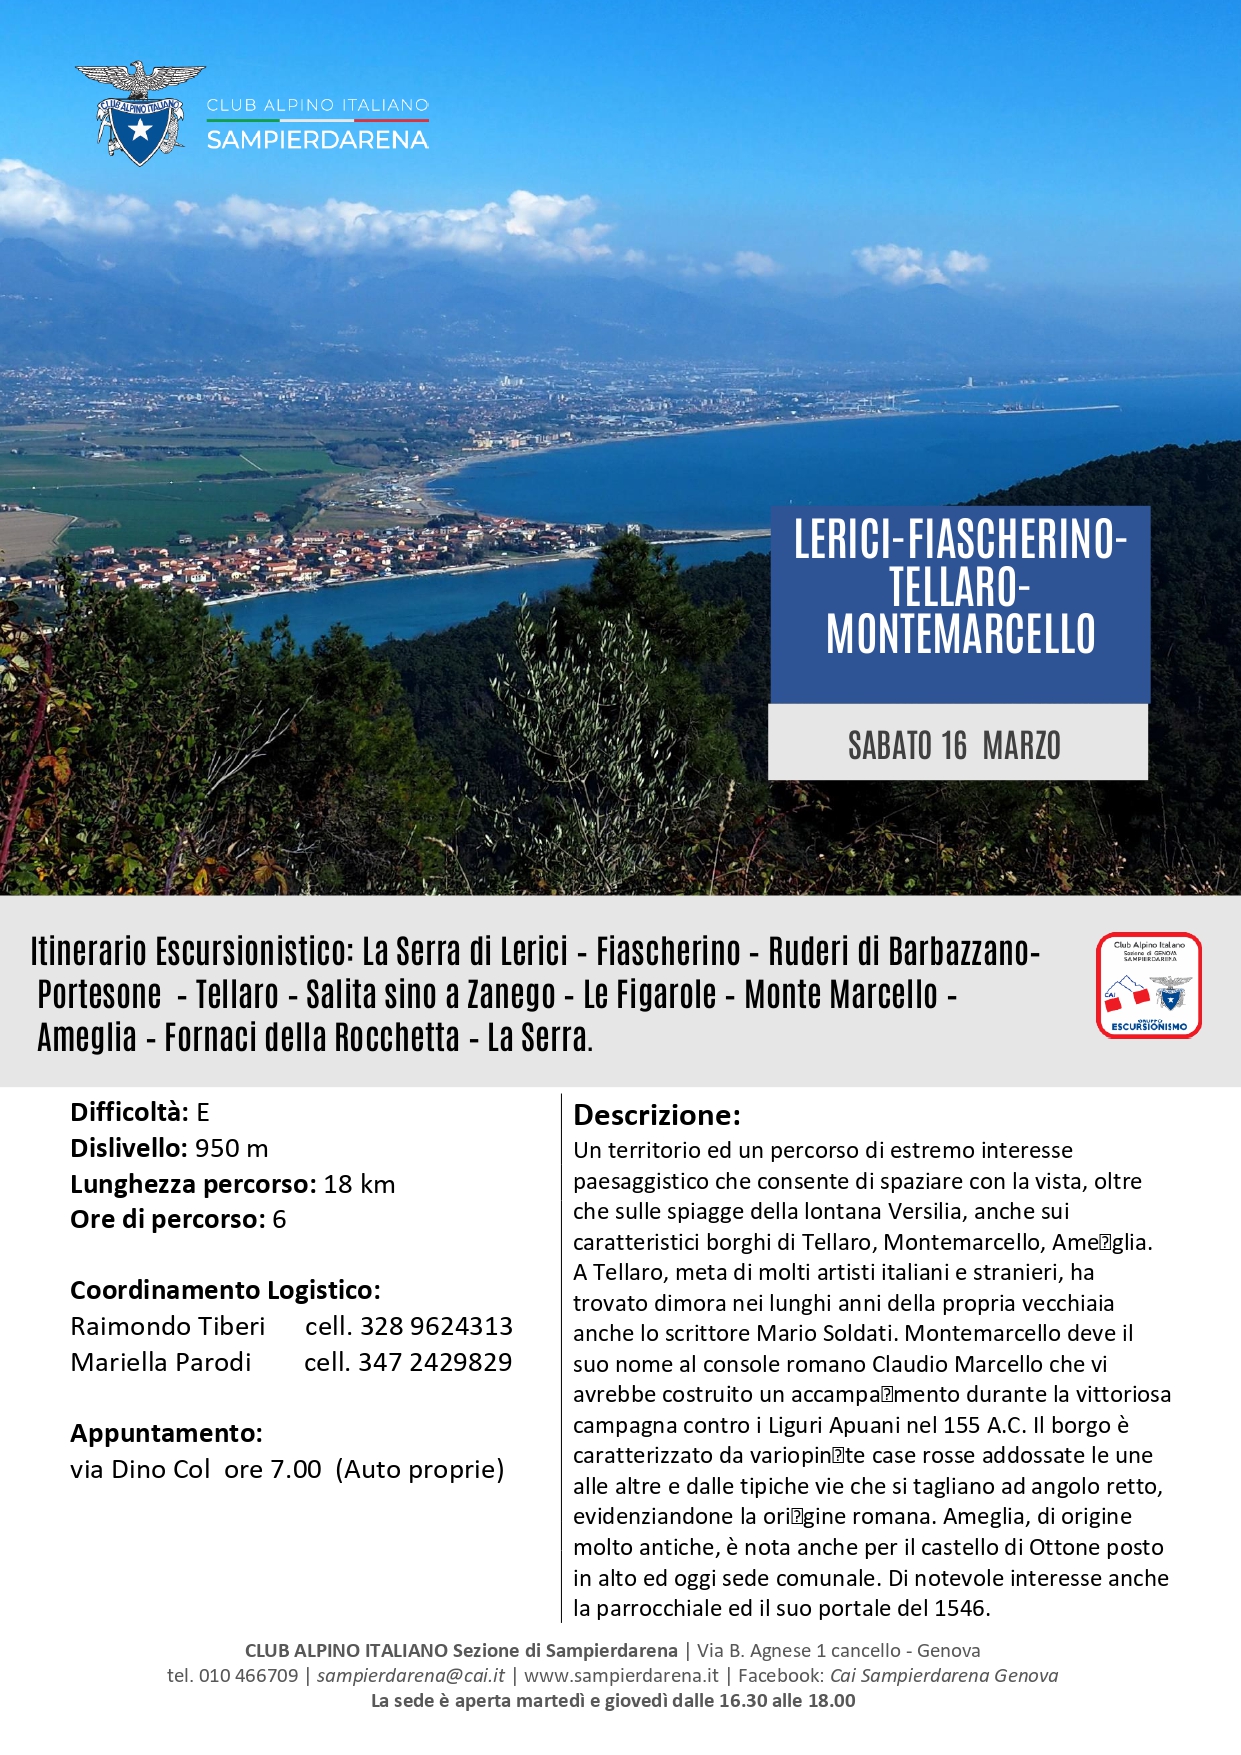 Domenica 17 Marzo- Escursionismo – Lerici-Fiascherino-Tellaro-Monte Marcello